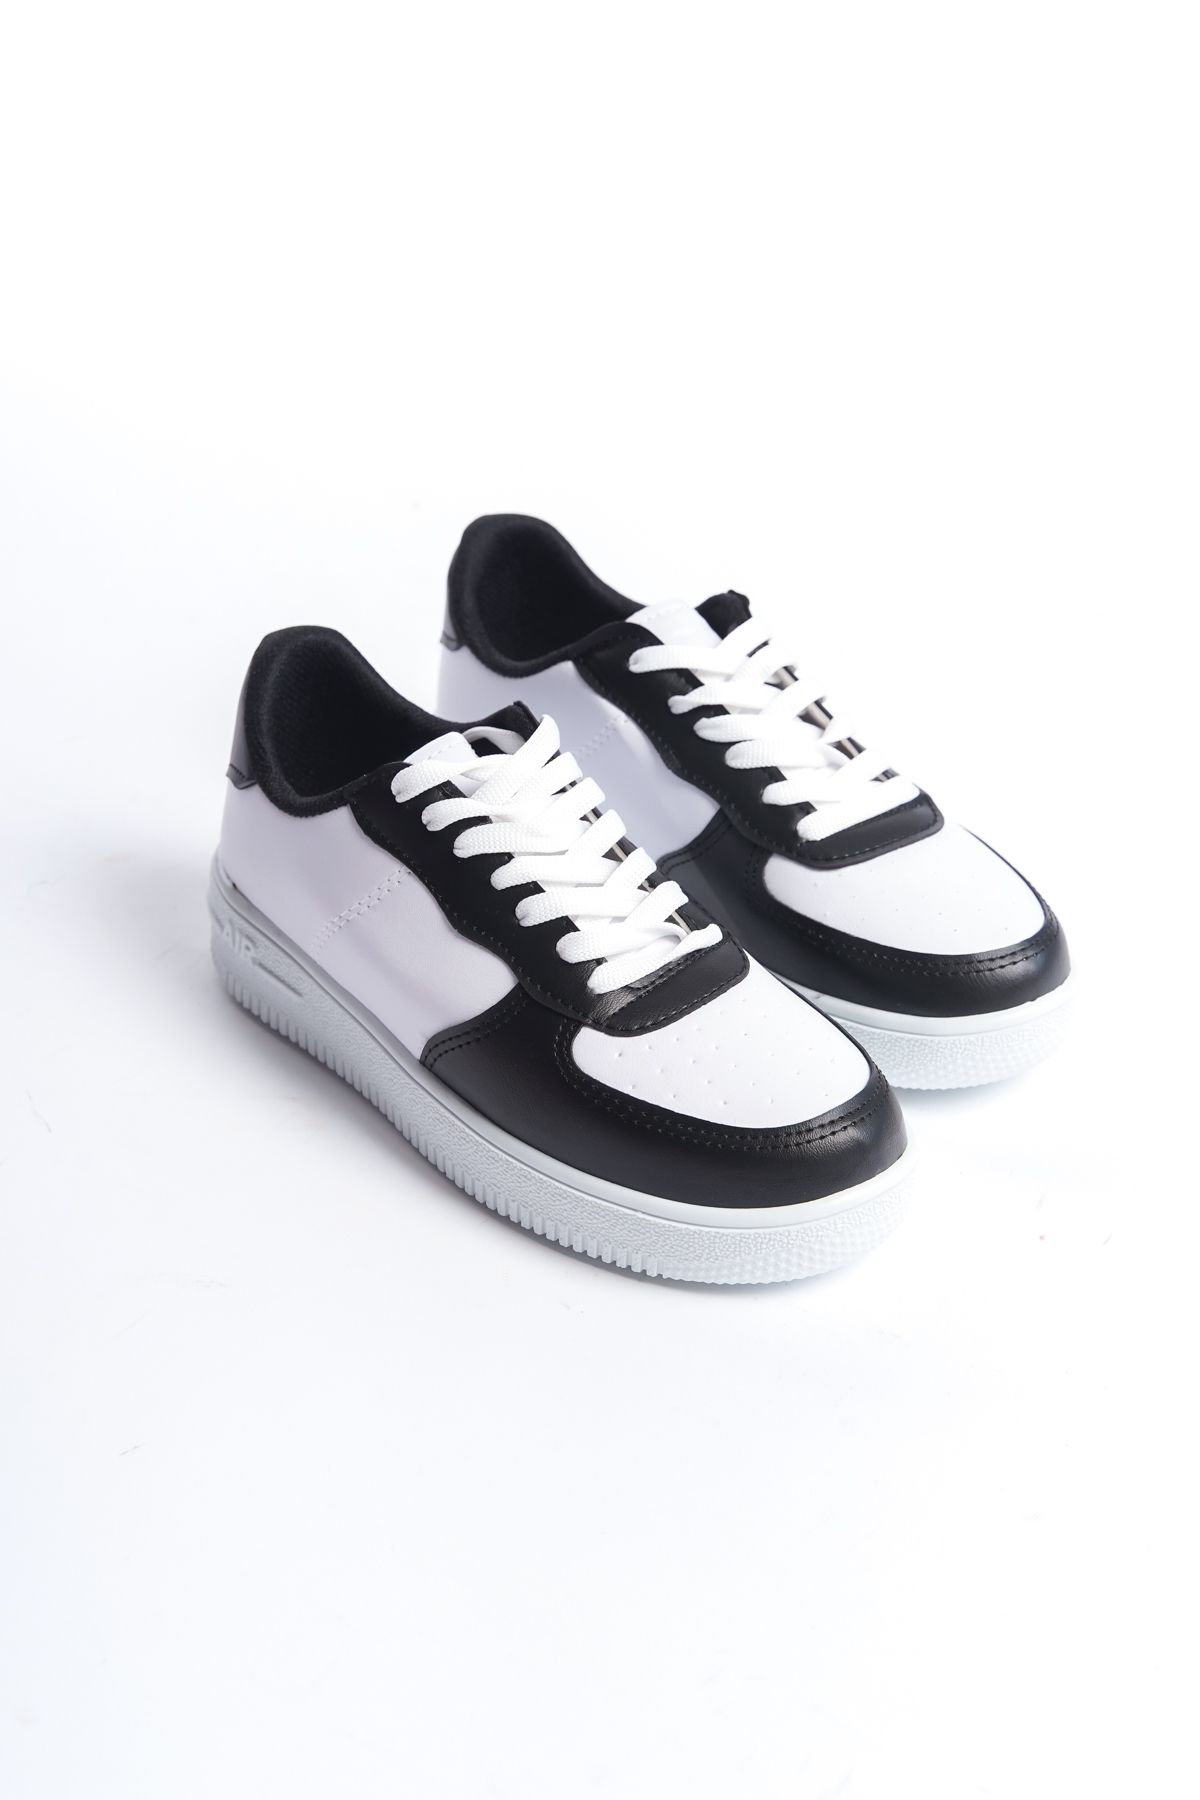 BAKGİY Beyaz-Siyah-Beyaz Kadın Sneaker BG1003-101-0001